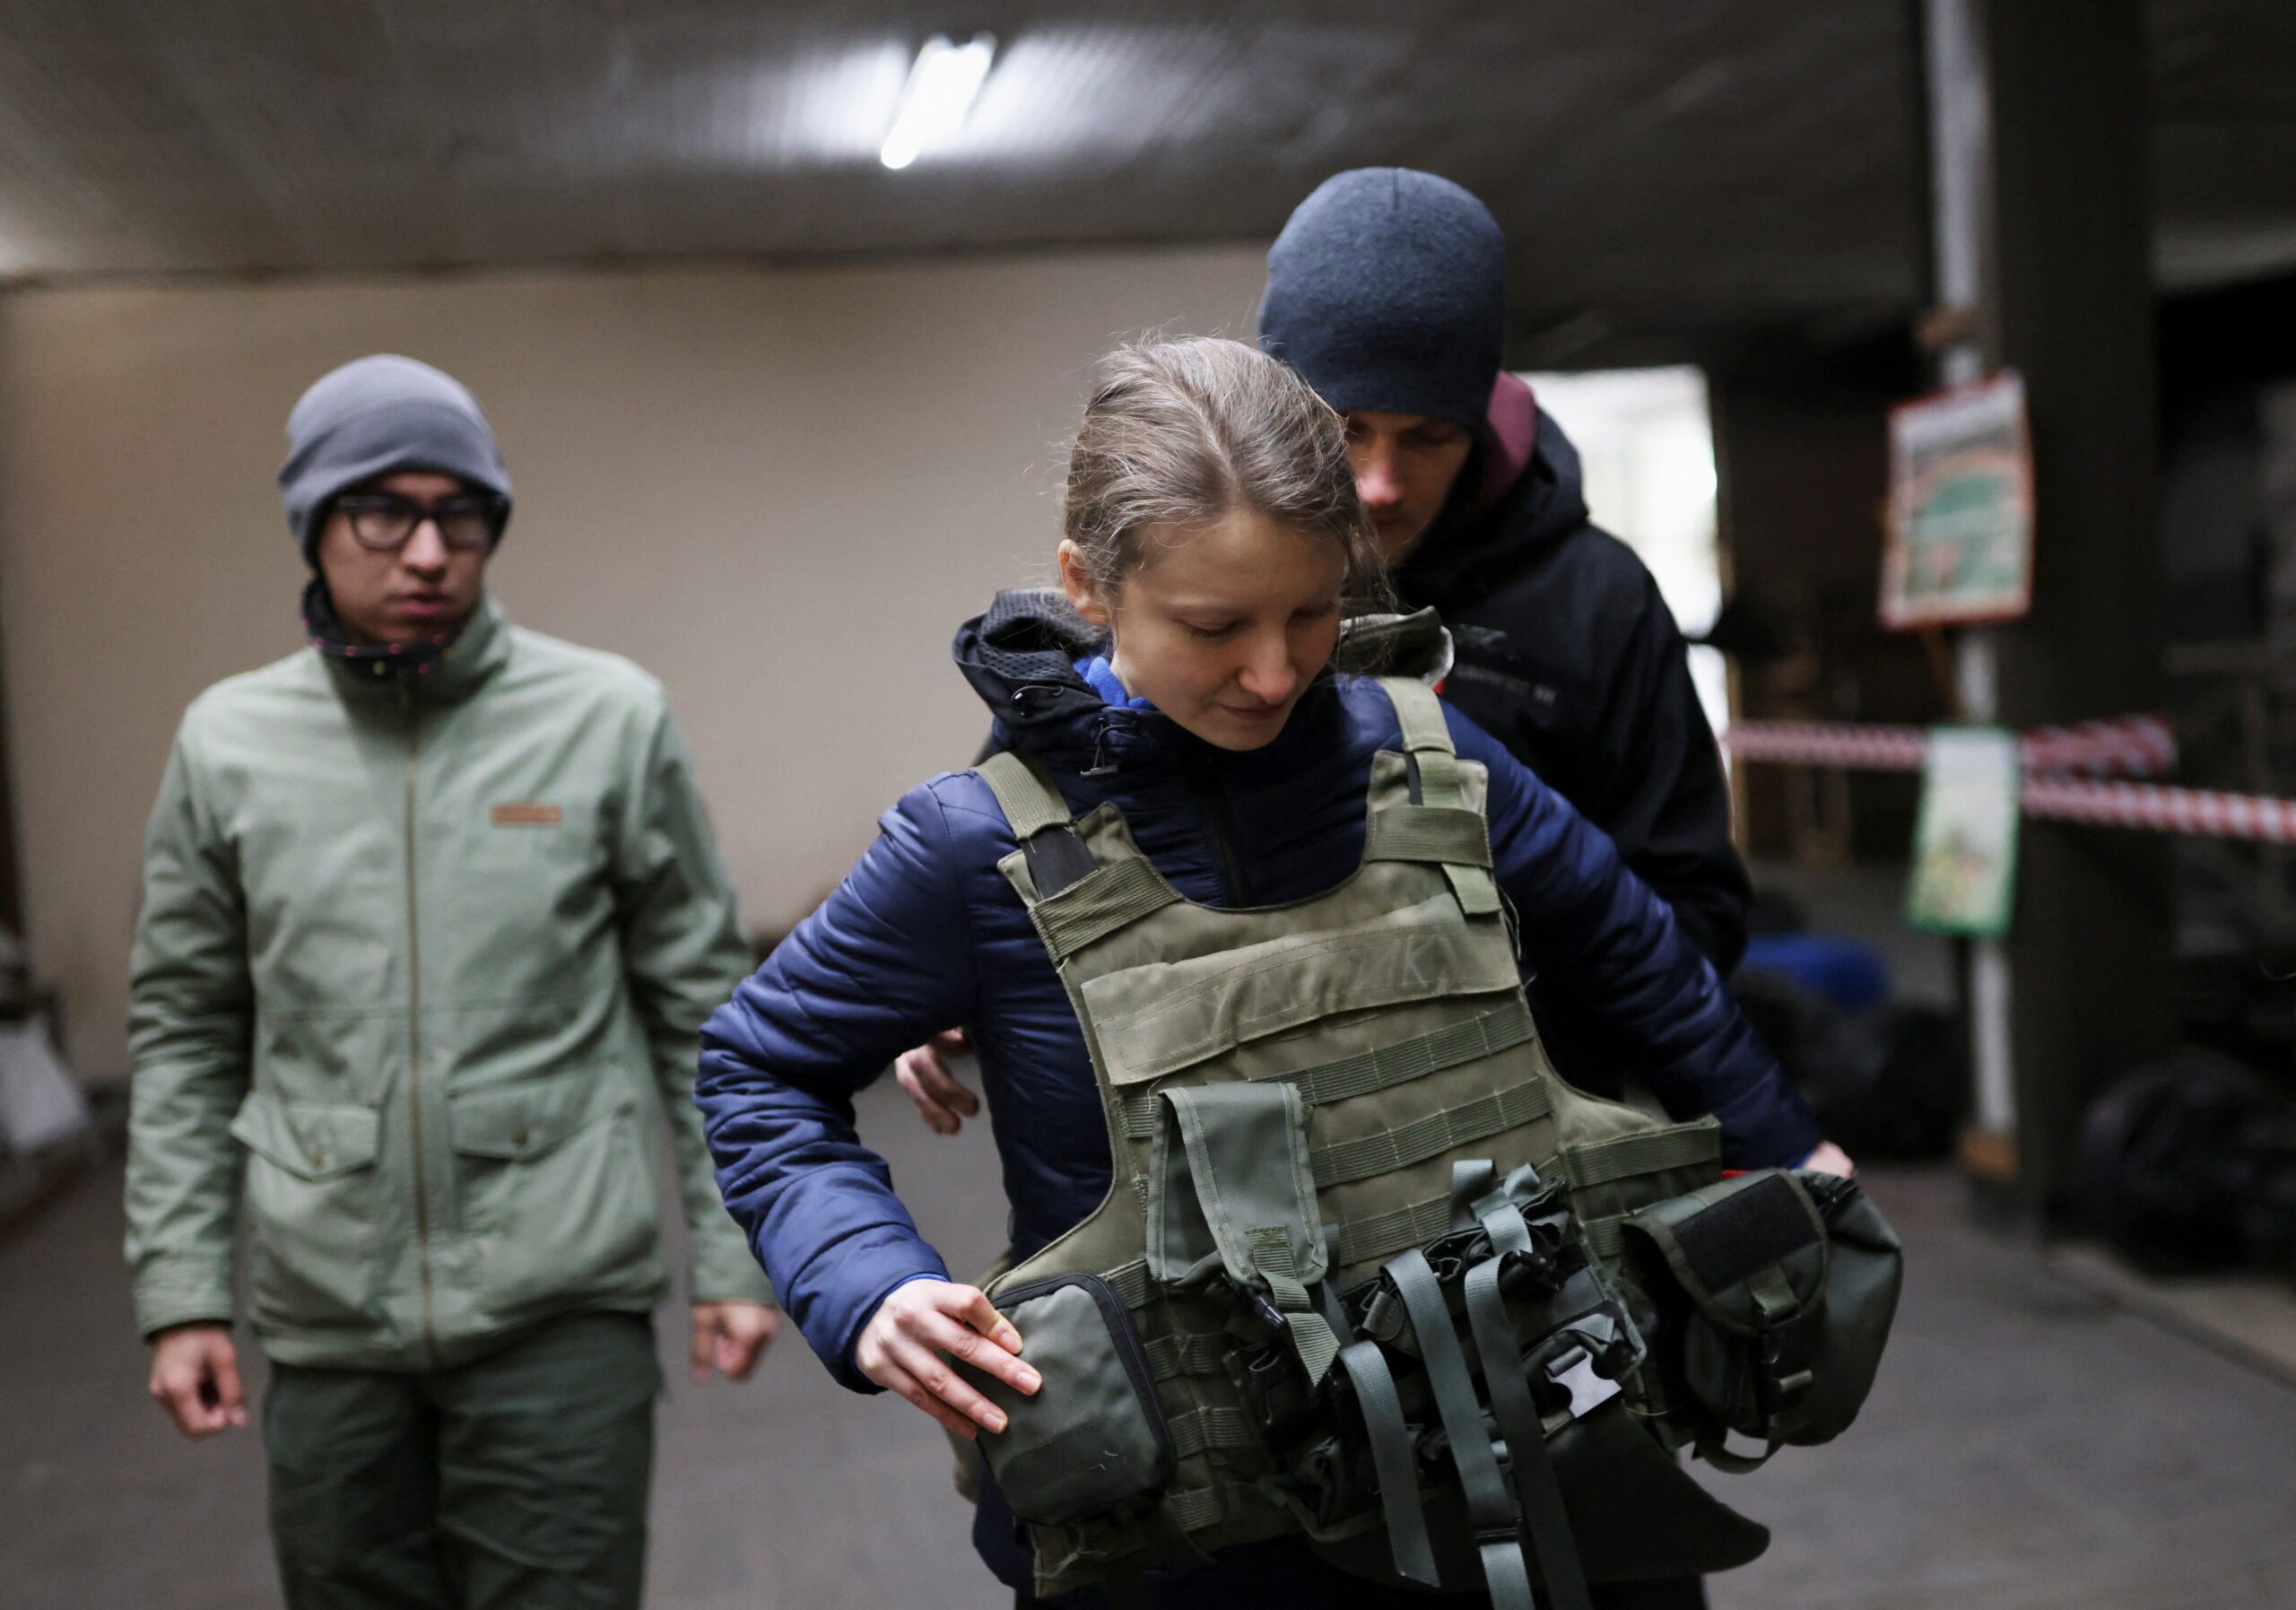 Meet the Ukrainian couples training for war